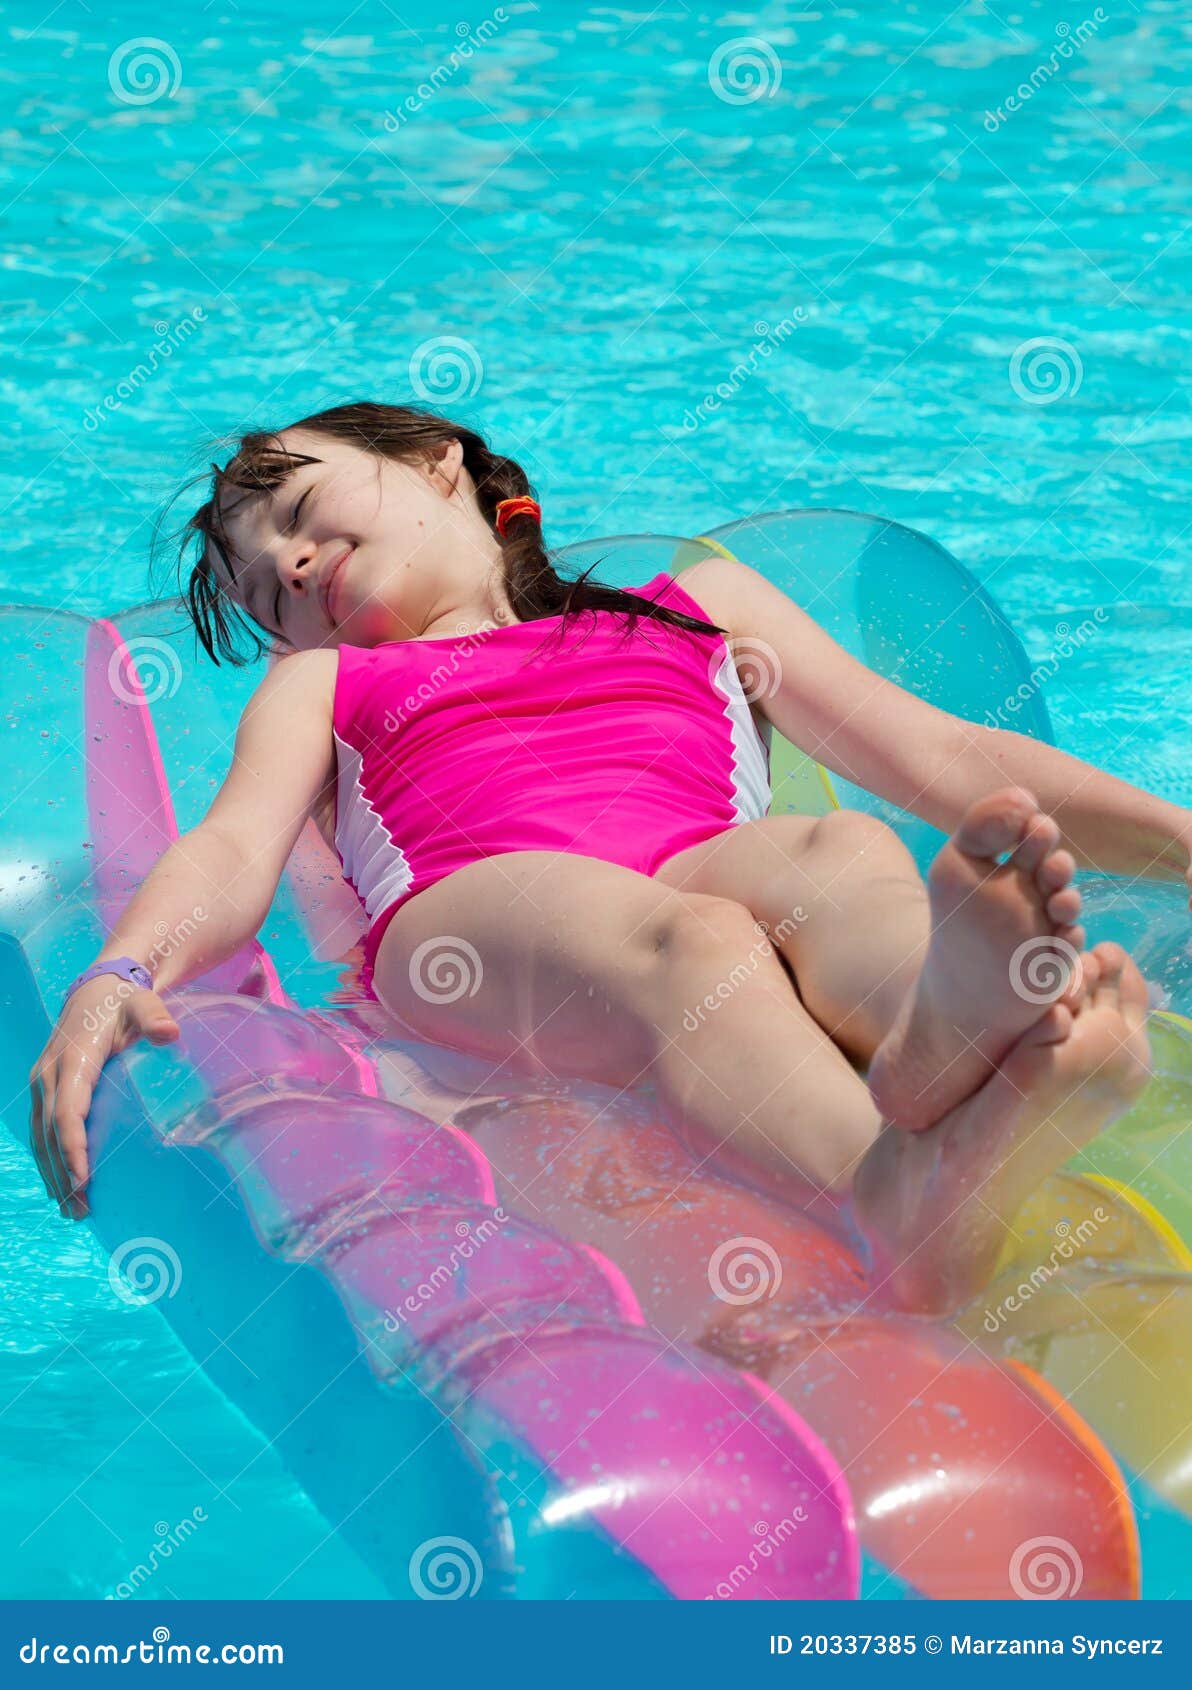 girl on lilo in swimming pool